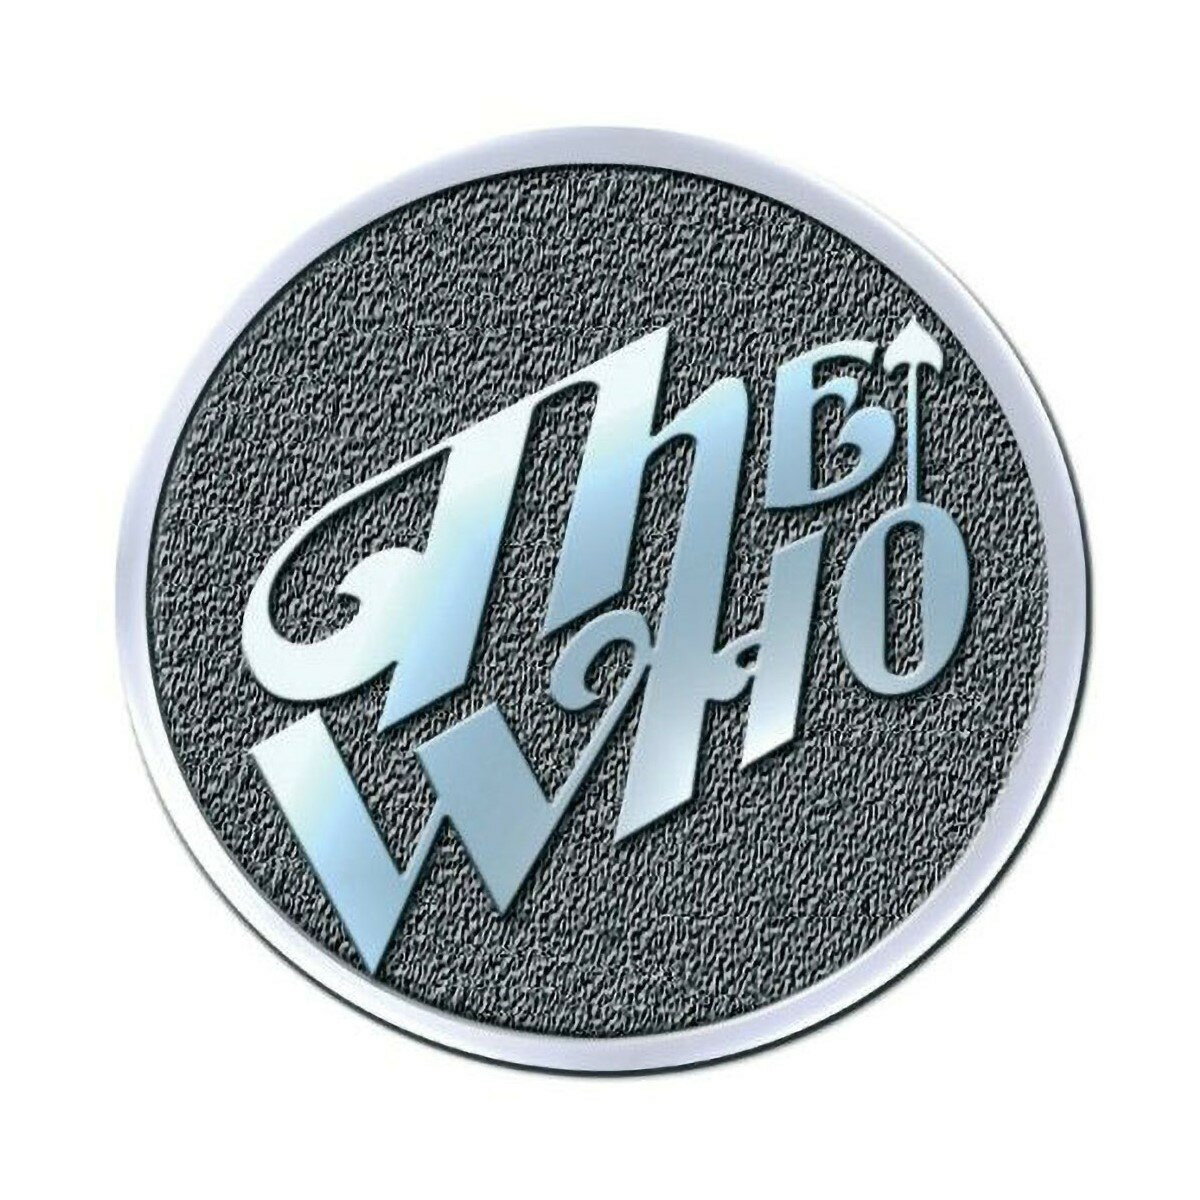 (ザ・フー) The Who オフィシャル商品 Metal Arrow バッジ 【海外通販】